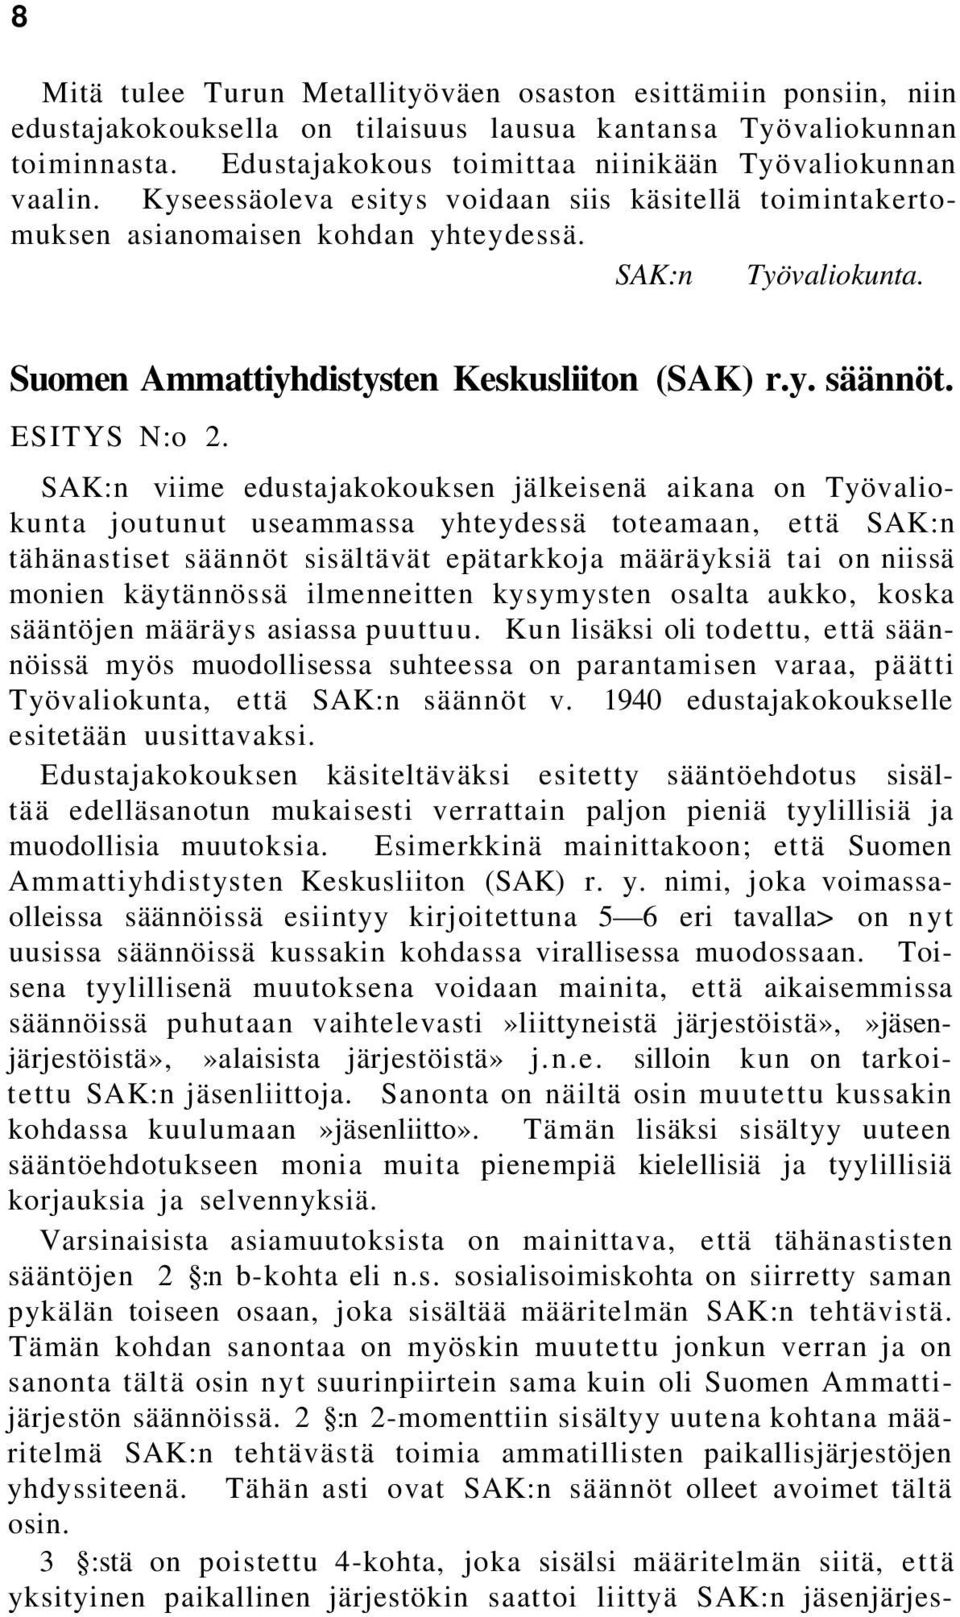 Suomen Ammattiyhdistysten Keskusliiton (SAK) r.y. säännöt. ESITYS N:o 2.